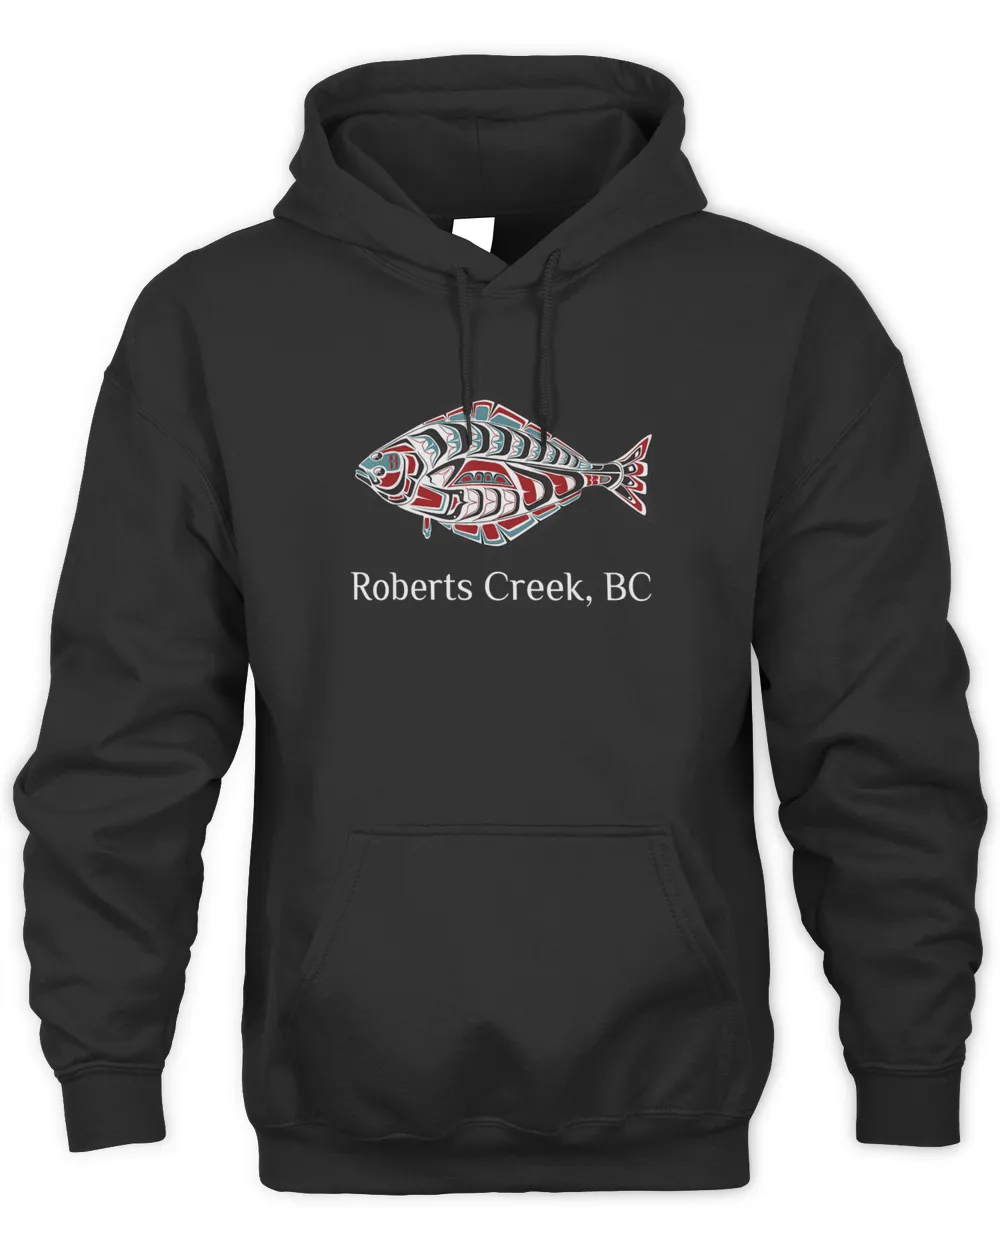 naa-oaw-60 Roberts Creek British Columbia Halibut Native Fsherman